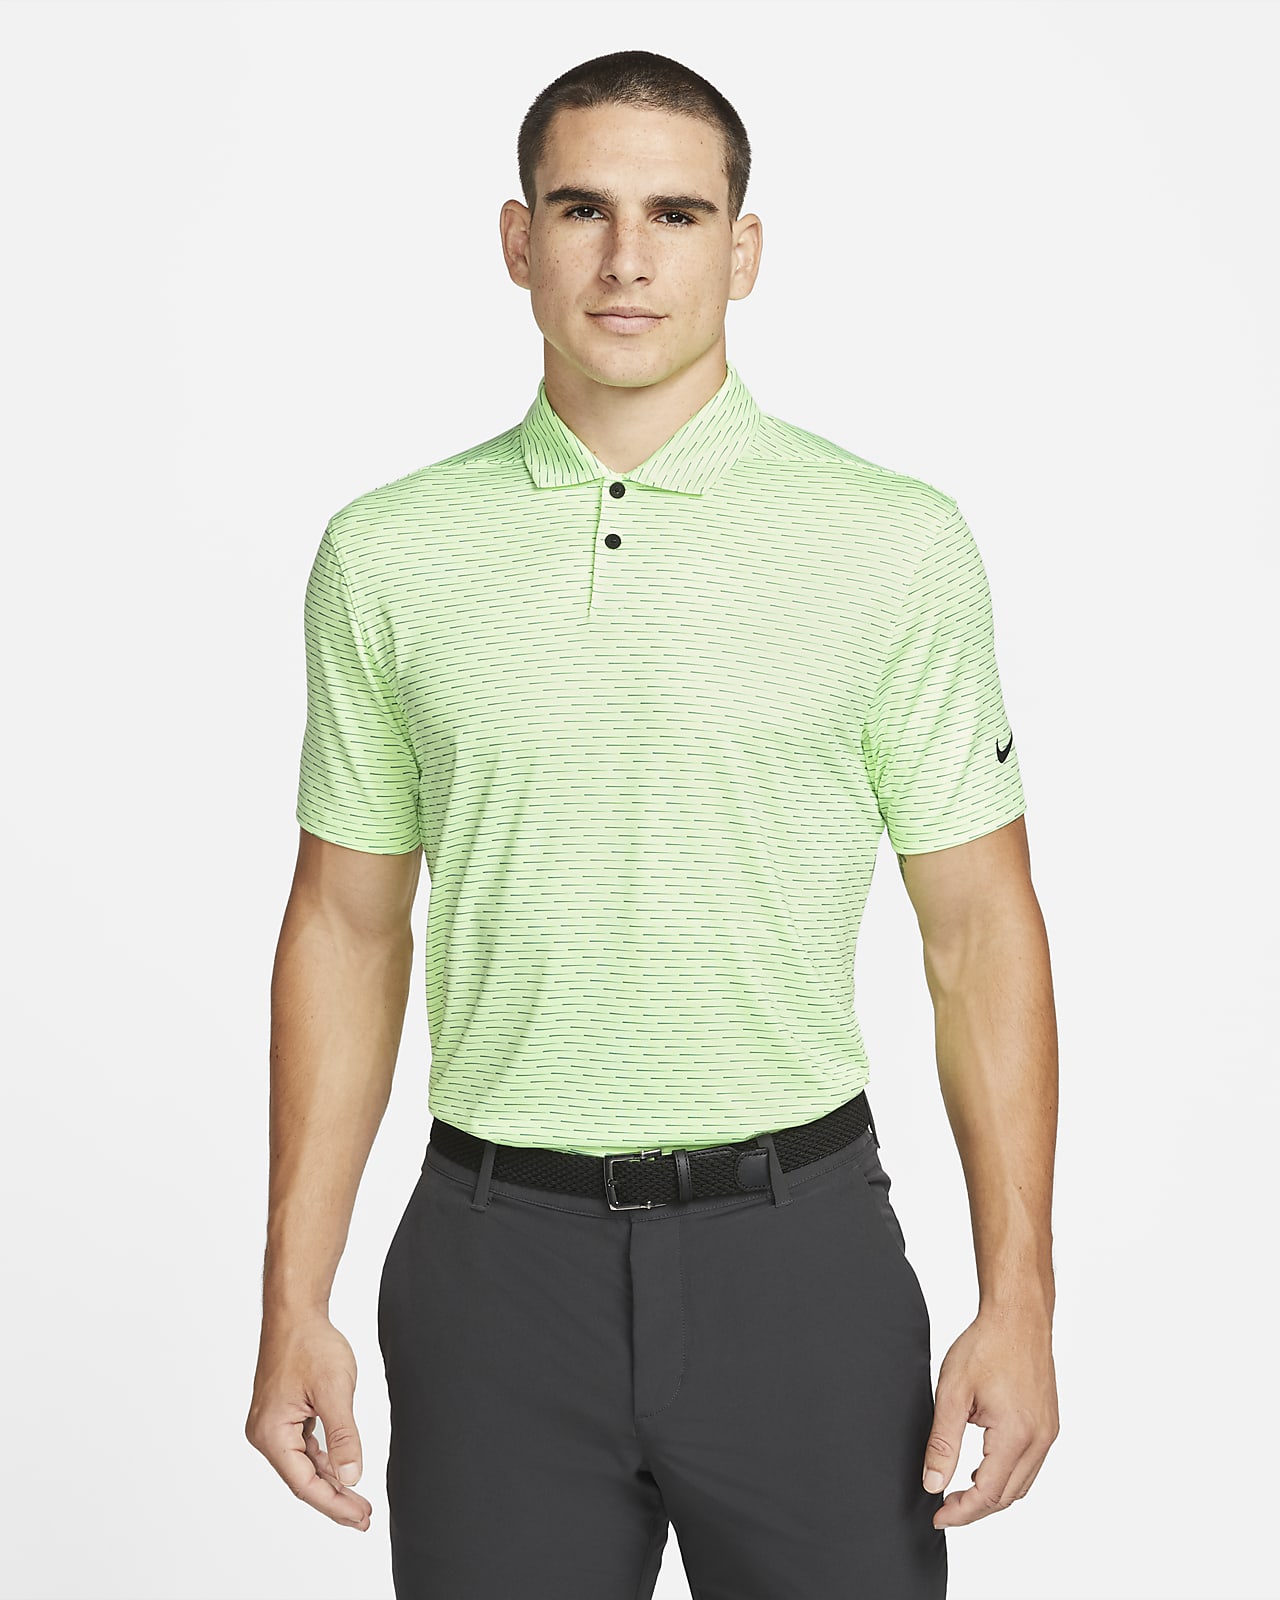 Nike Dri-FIT Vapor Men's Striped Golf Polo